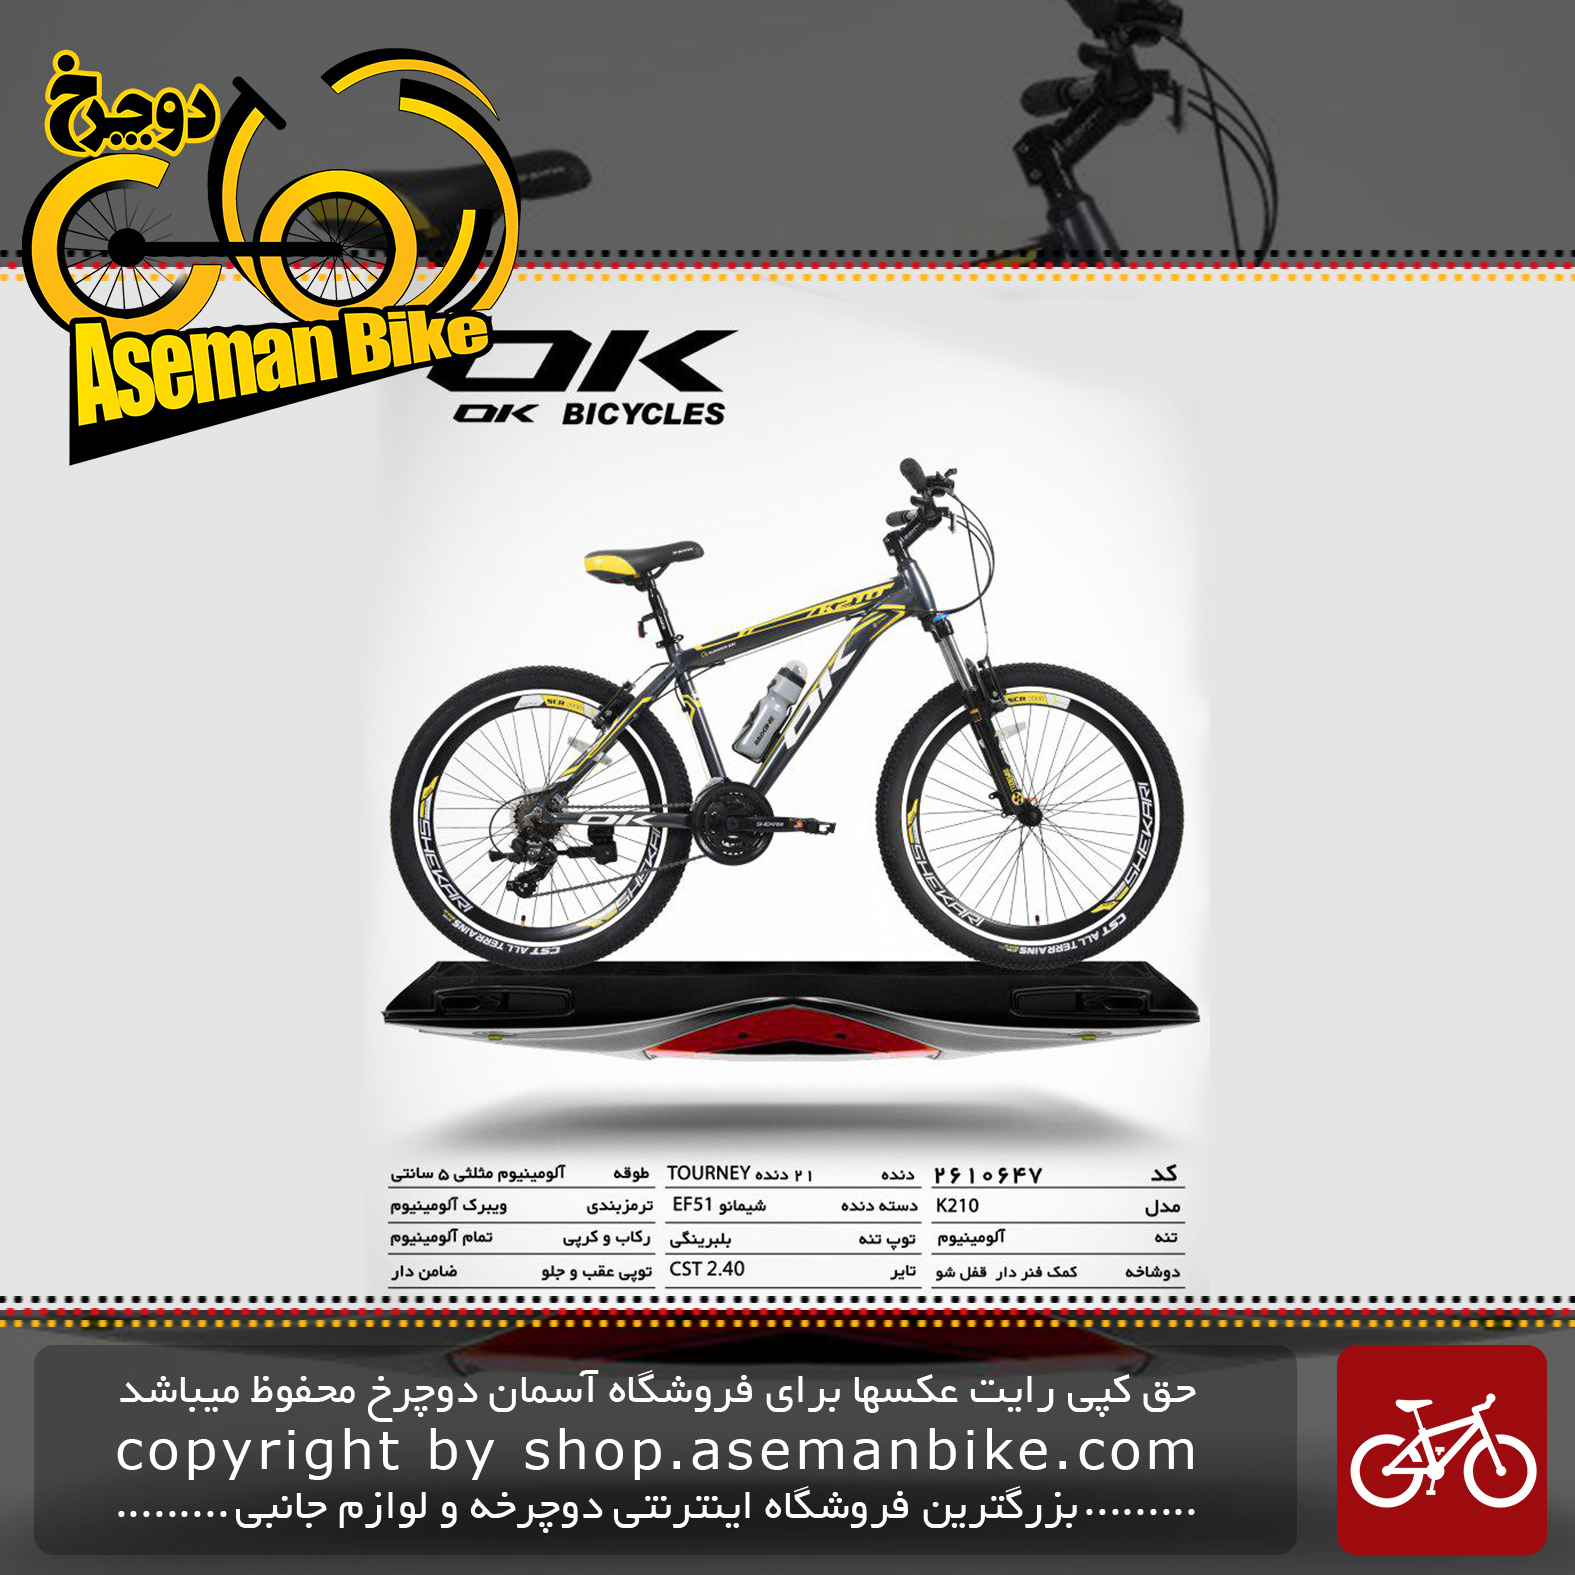 دوچرخه کوهستان شهری اوکی 21 دنده مدل کا 210 21 دنده سایز 26 ساخت تایوان OK Mountain City Bicycle Taiwan K210 Size 26 2019